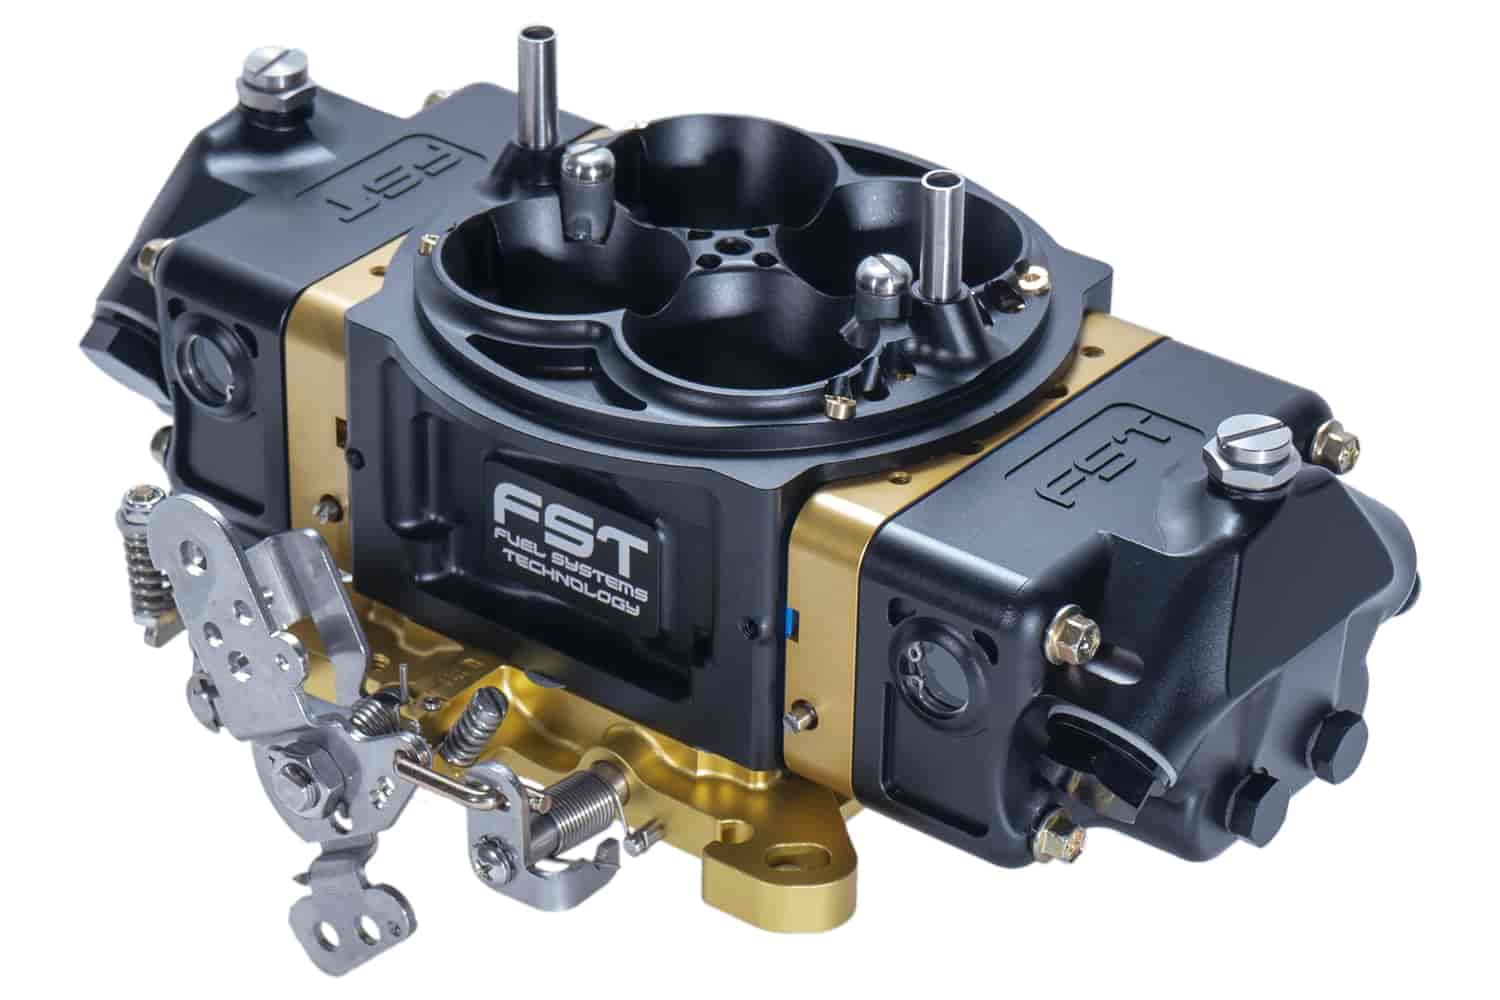 Billet X-treme Pro 4-Barrel Carburetor 850 CFM Mechanical Secondary